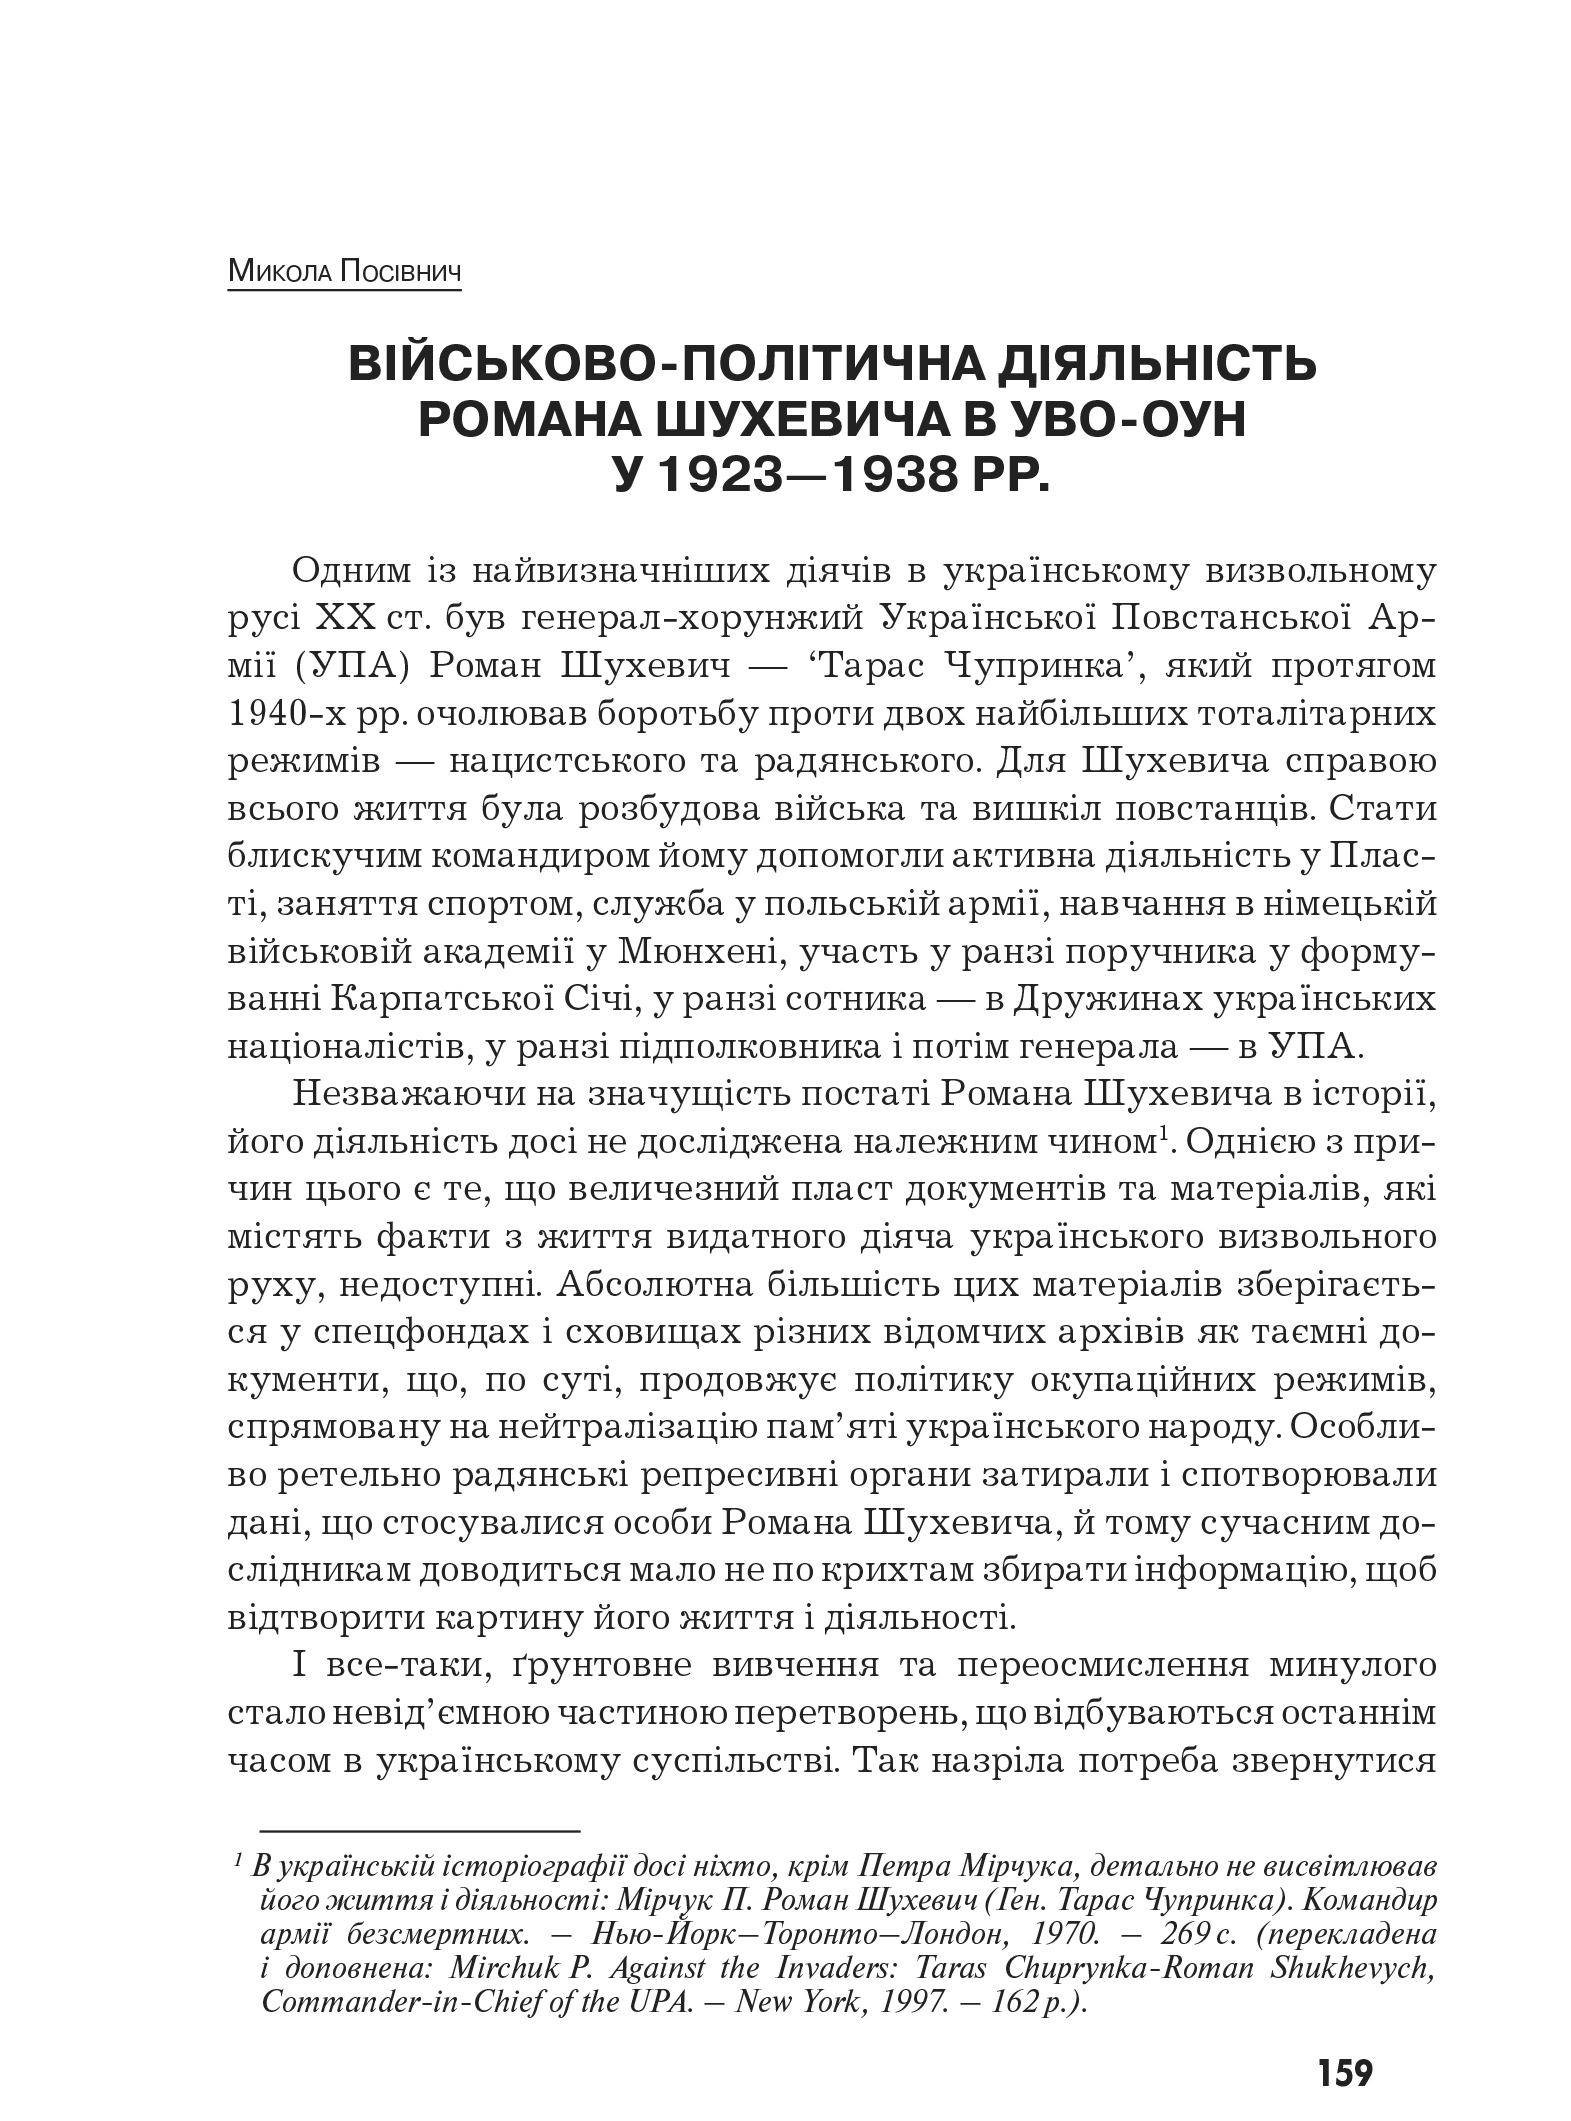 Український визвольний рух №10, ст. 159 - 170